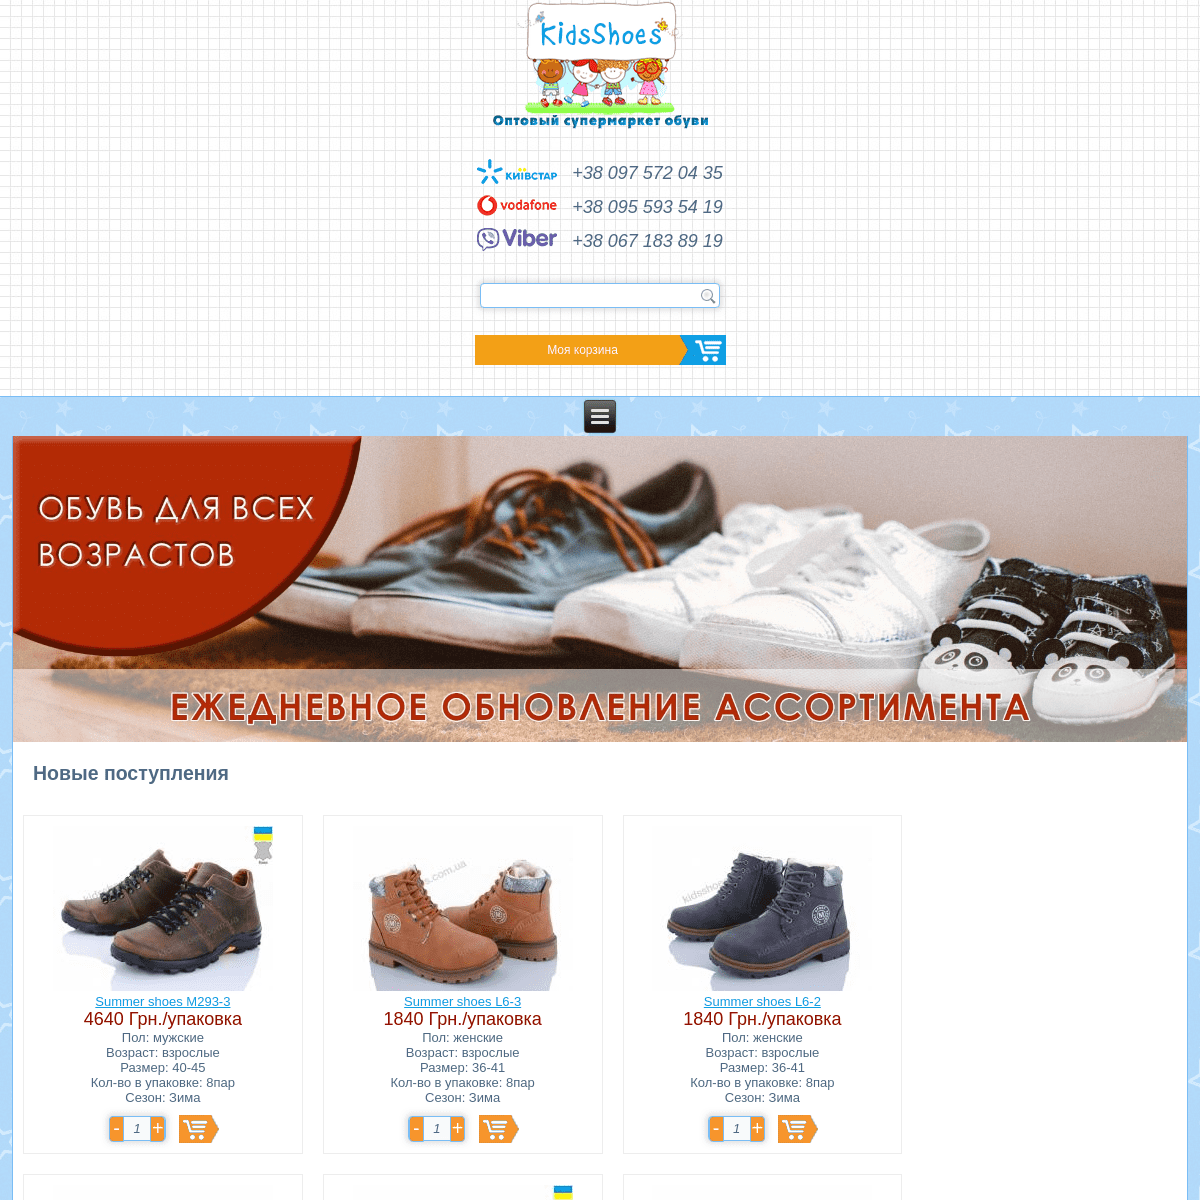 A complete backup of kidsshoes.com.ua